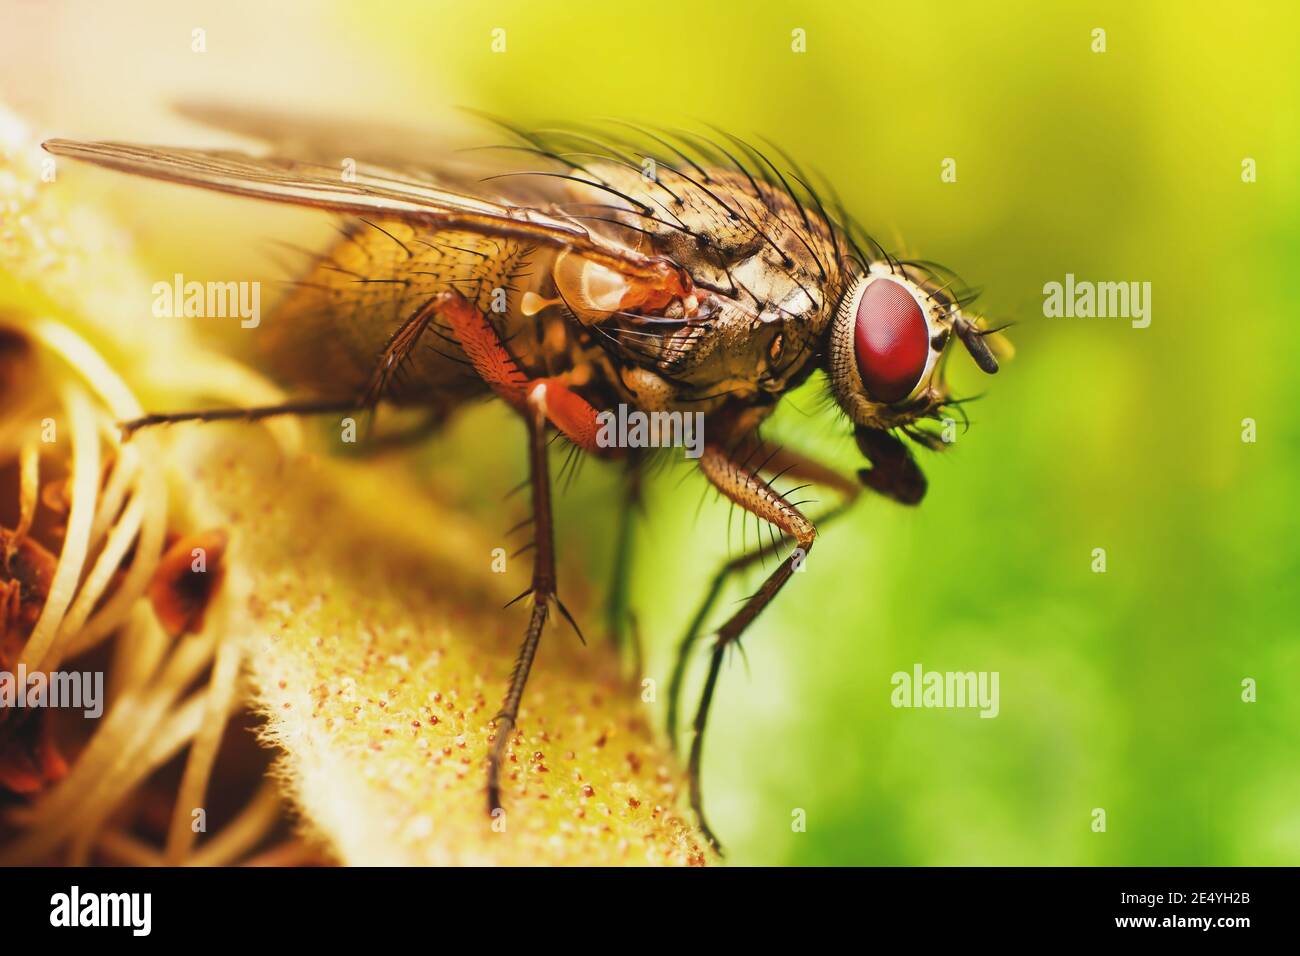 Makro Nahaufnahme Foto von Fliegeninsekt mit roten Augen Und dunkelgelb behaarten Körper sitzt auf Blatt mit verschwommen Grüner Hintergrund Stockfoto